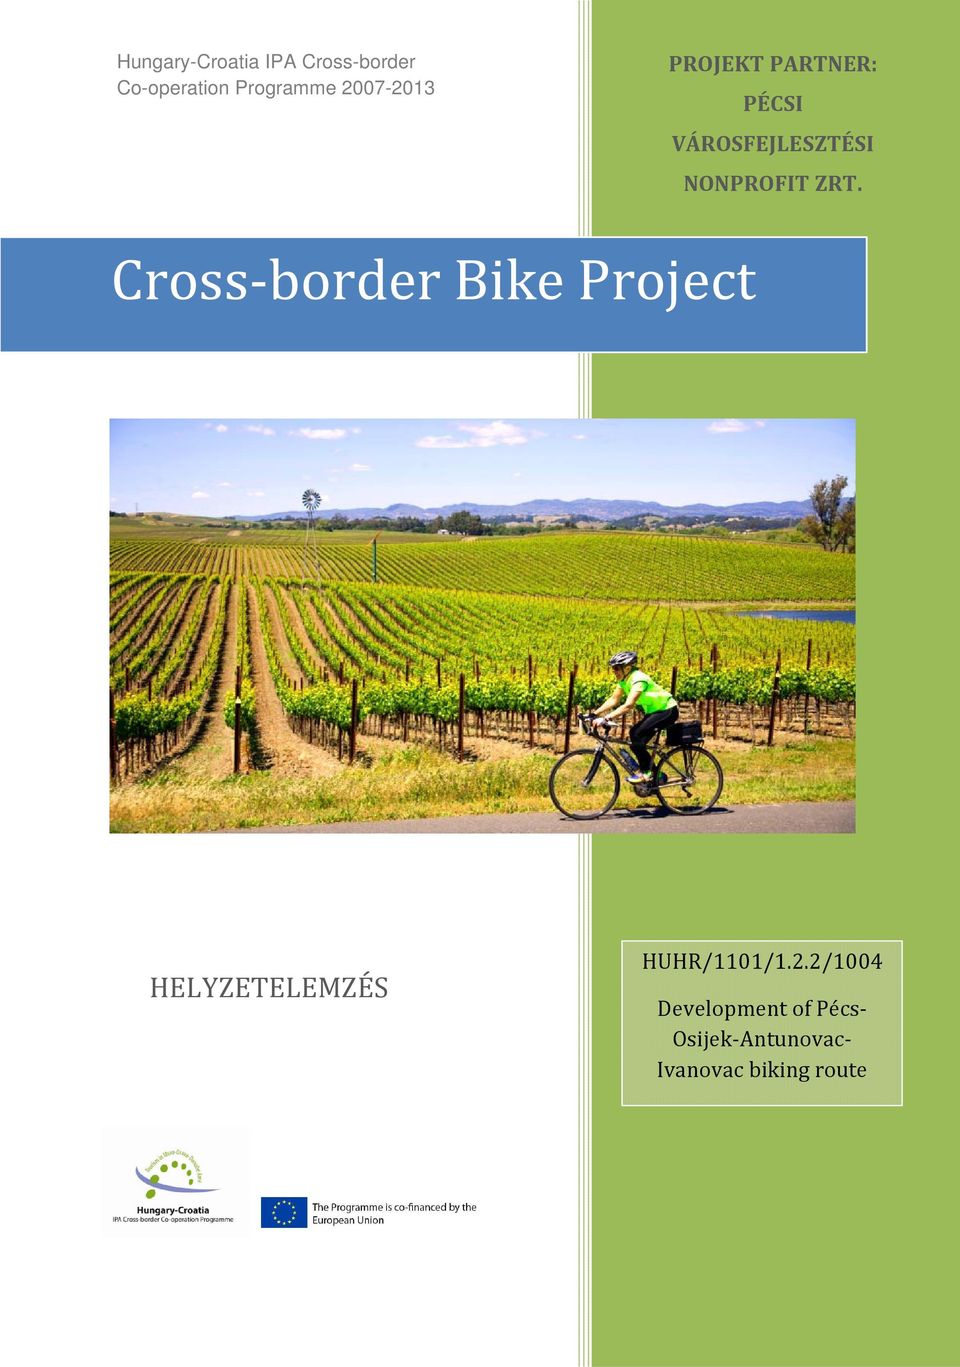 ZRT. Cross-border Bike Project HELYZETELEMZÉS HUHR/1101/1.2.